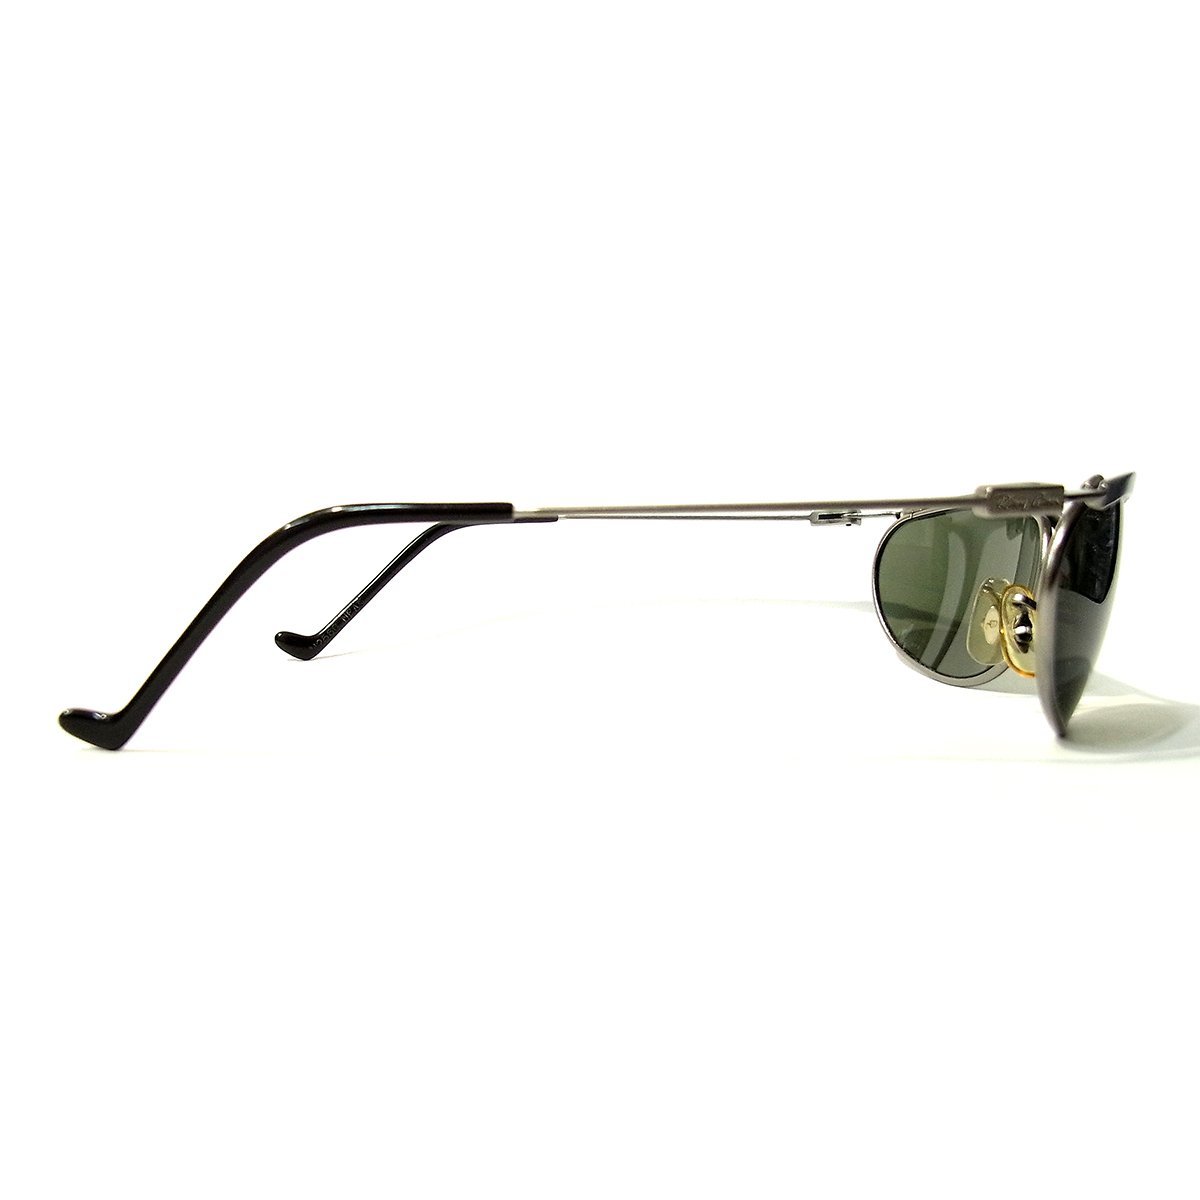  прекрасный товар RayBan солнцезащитные очки W2566 NPAS серебряный цвет оттенок зеленого линзы Ray-Ban =